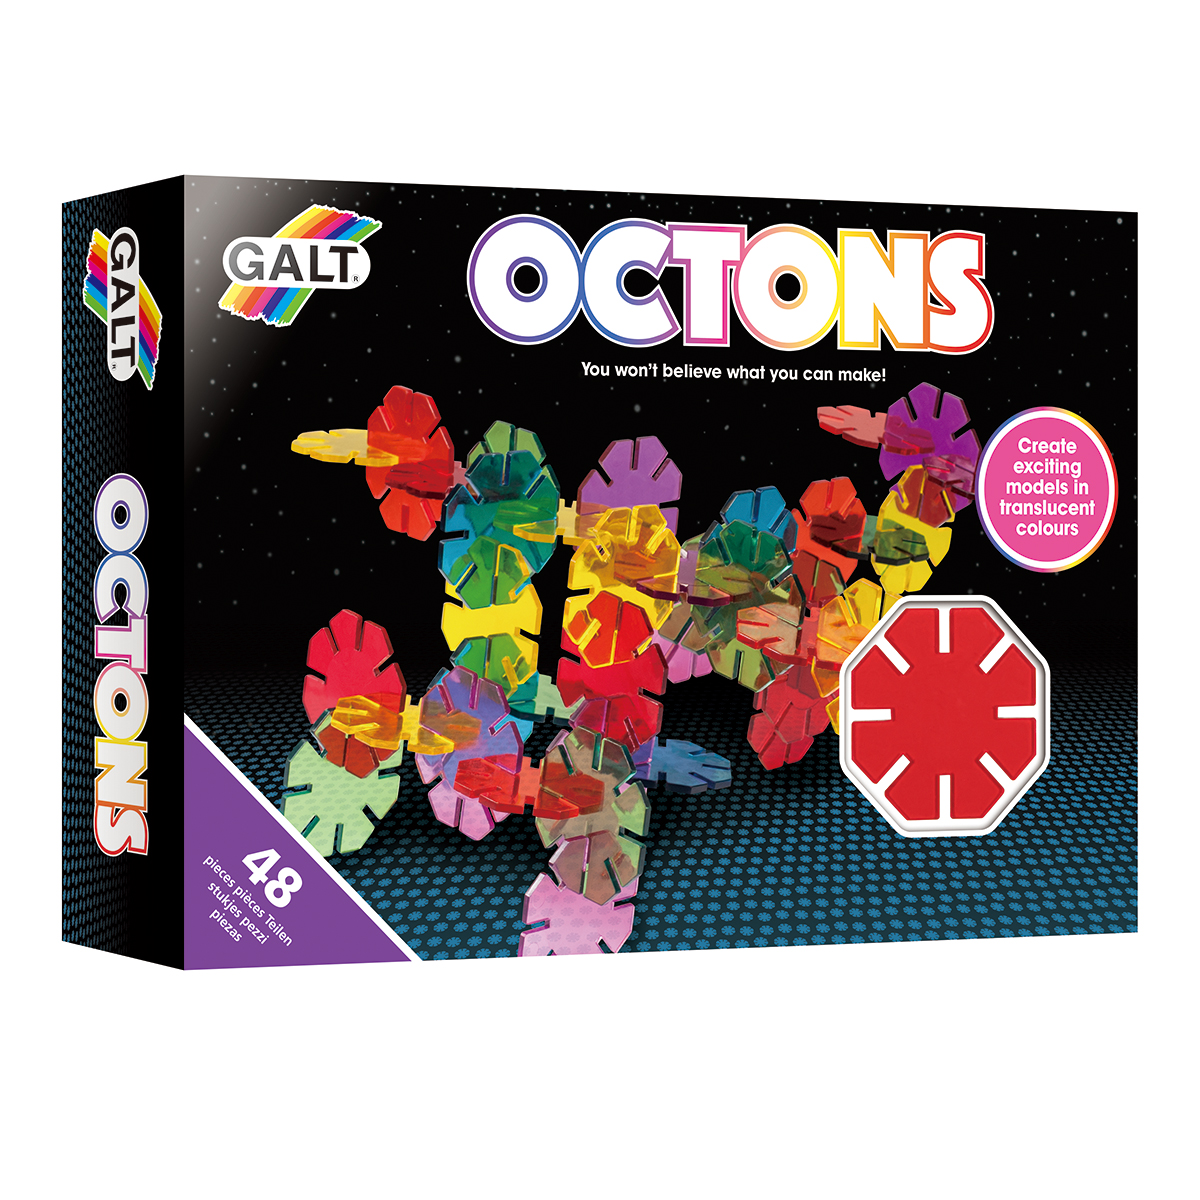 3D First Octons